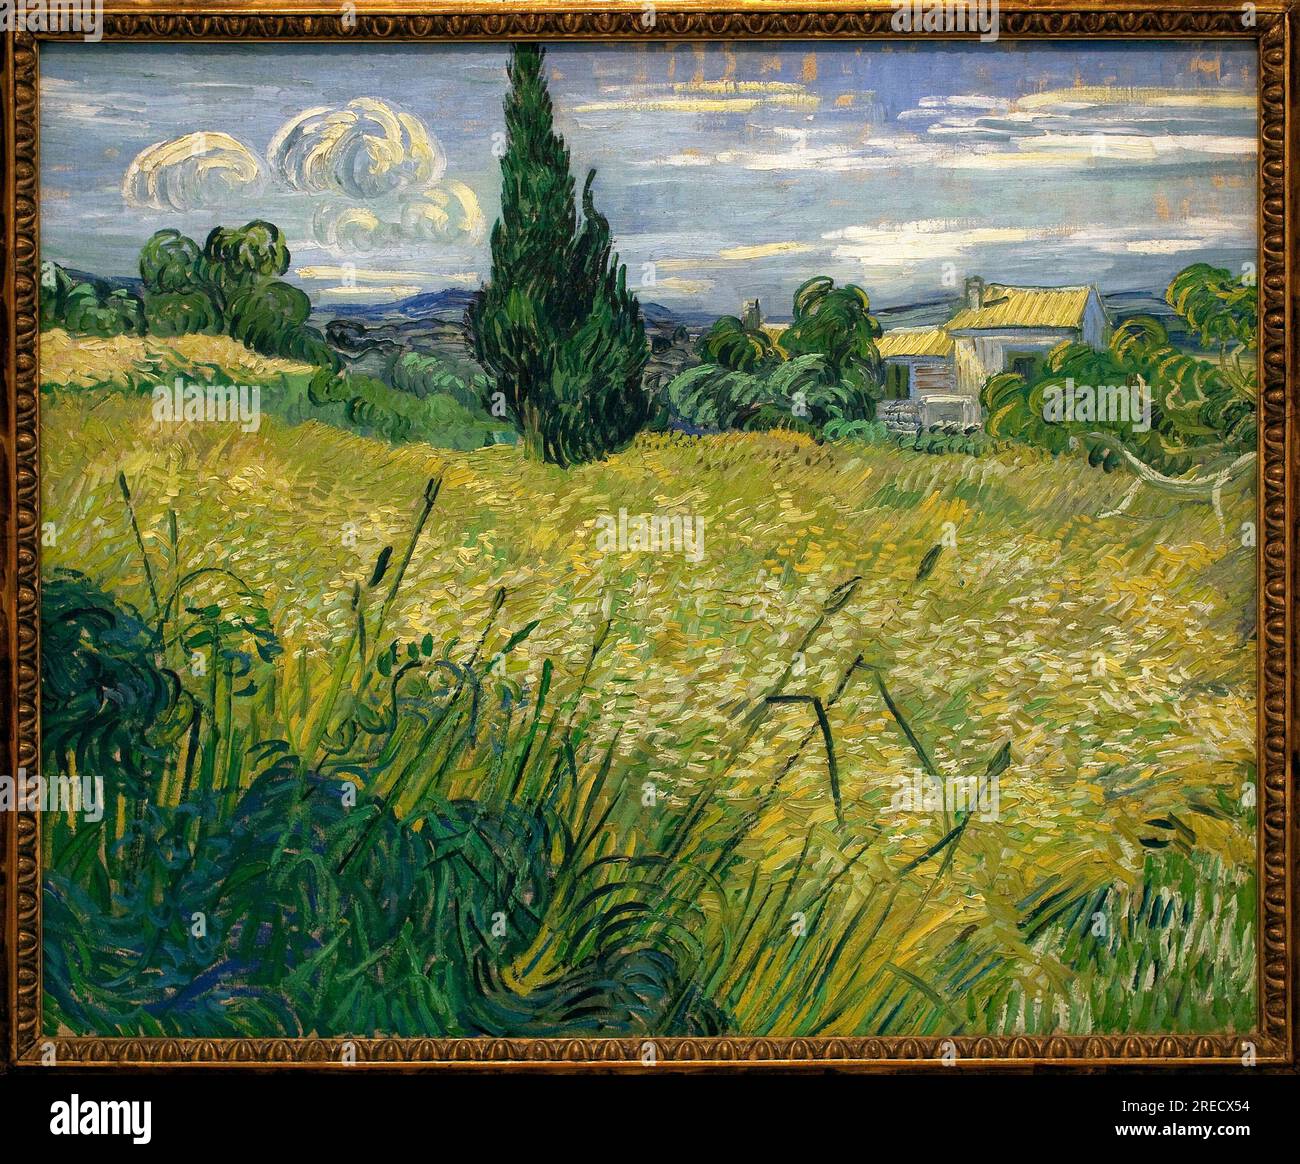 Mais vert - Peinture de Vincent Van Gogh (1853-1890), huile sur toile, 1889 - art francais, 19e siecle - Palais Veletrzni (palais des foires), Prague (Republique Tcheque) Stock Photo